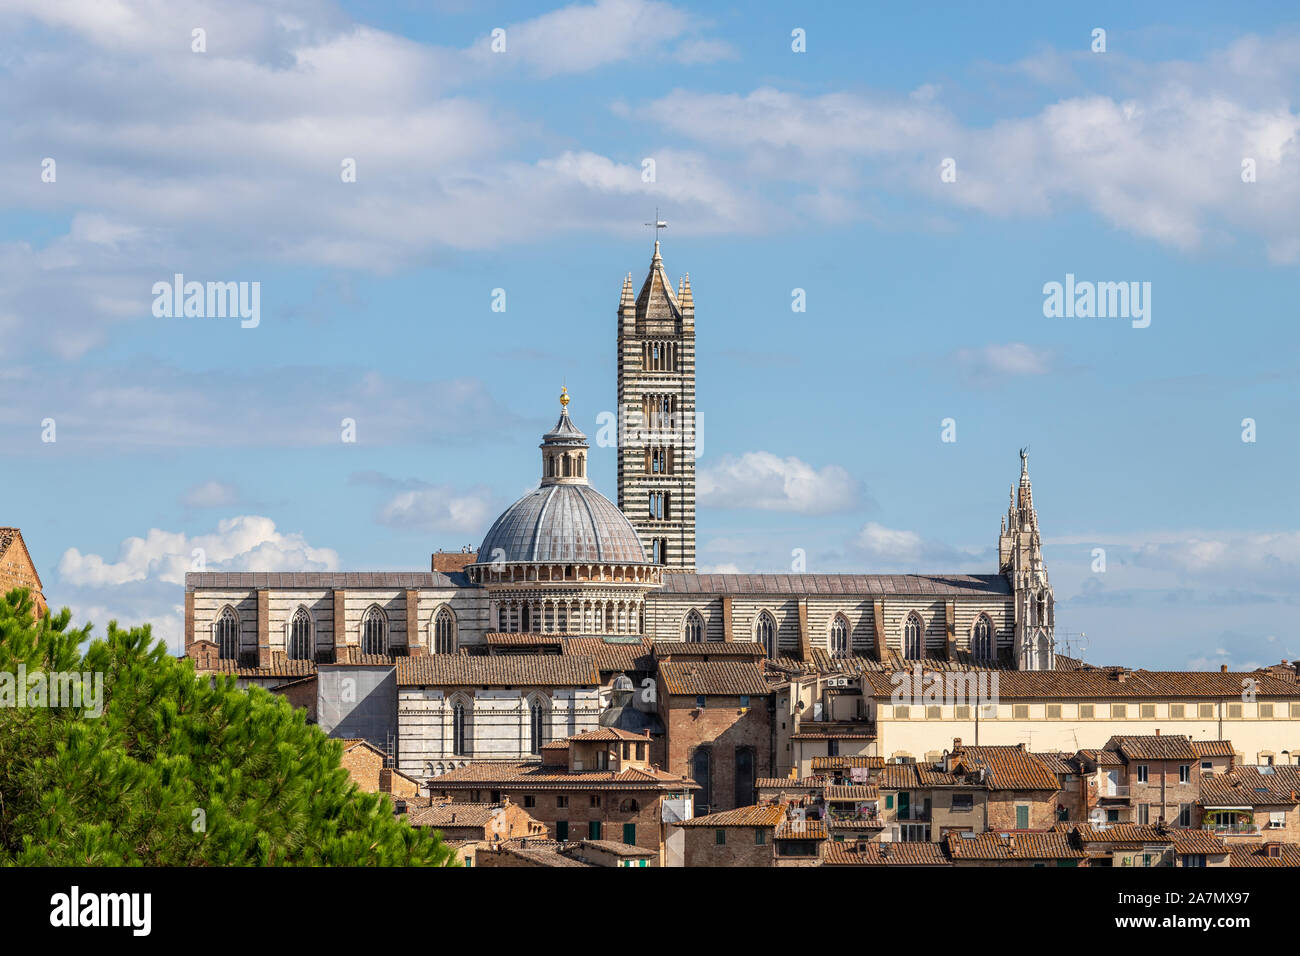 Vue de la Cathédrale de Sienne a partir de la Forteresse Medicea, Sienne - Italie Banque D'Images